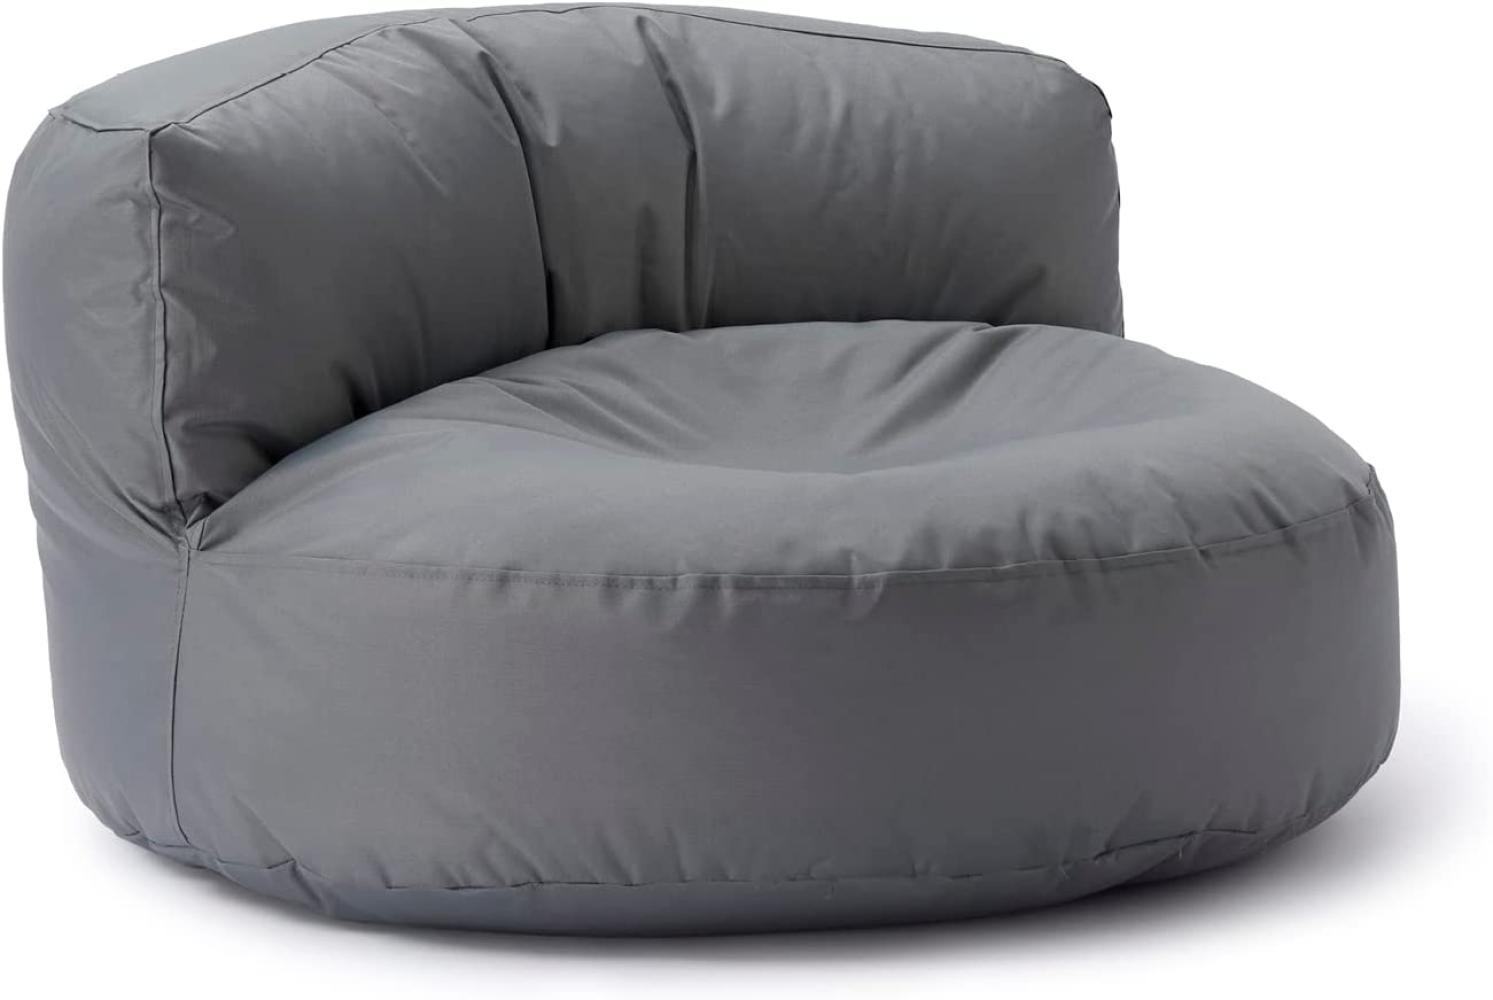 Lumaland Outdoor Sitzsack-Lounge, Rundes Sitzsack-Sofa für draußen, 320l Füllung, 90 x 50 cm, Grau Bild 1